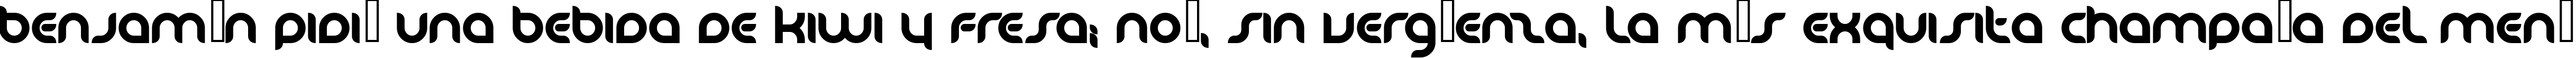 Пример написания шрифтом Danube Bold текста на испанском